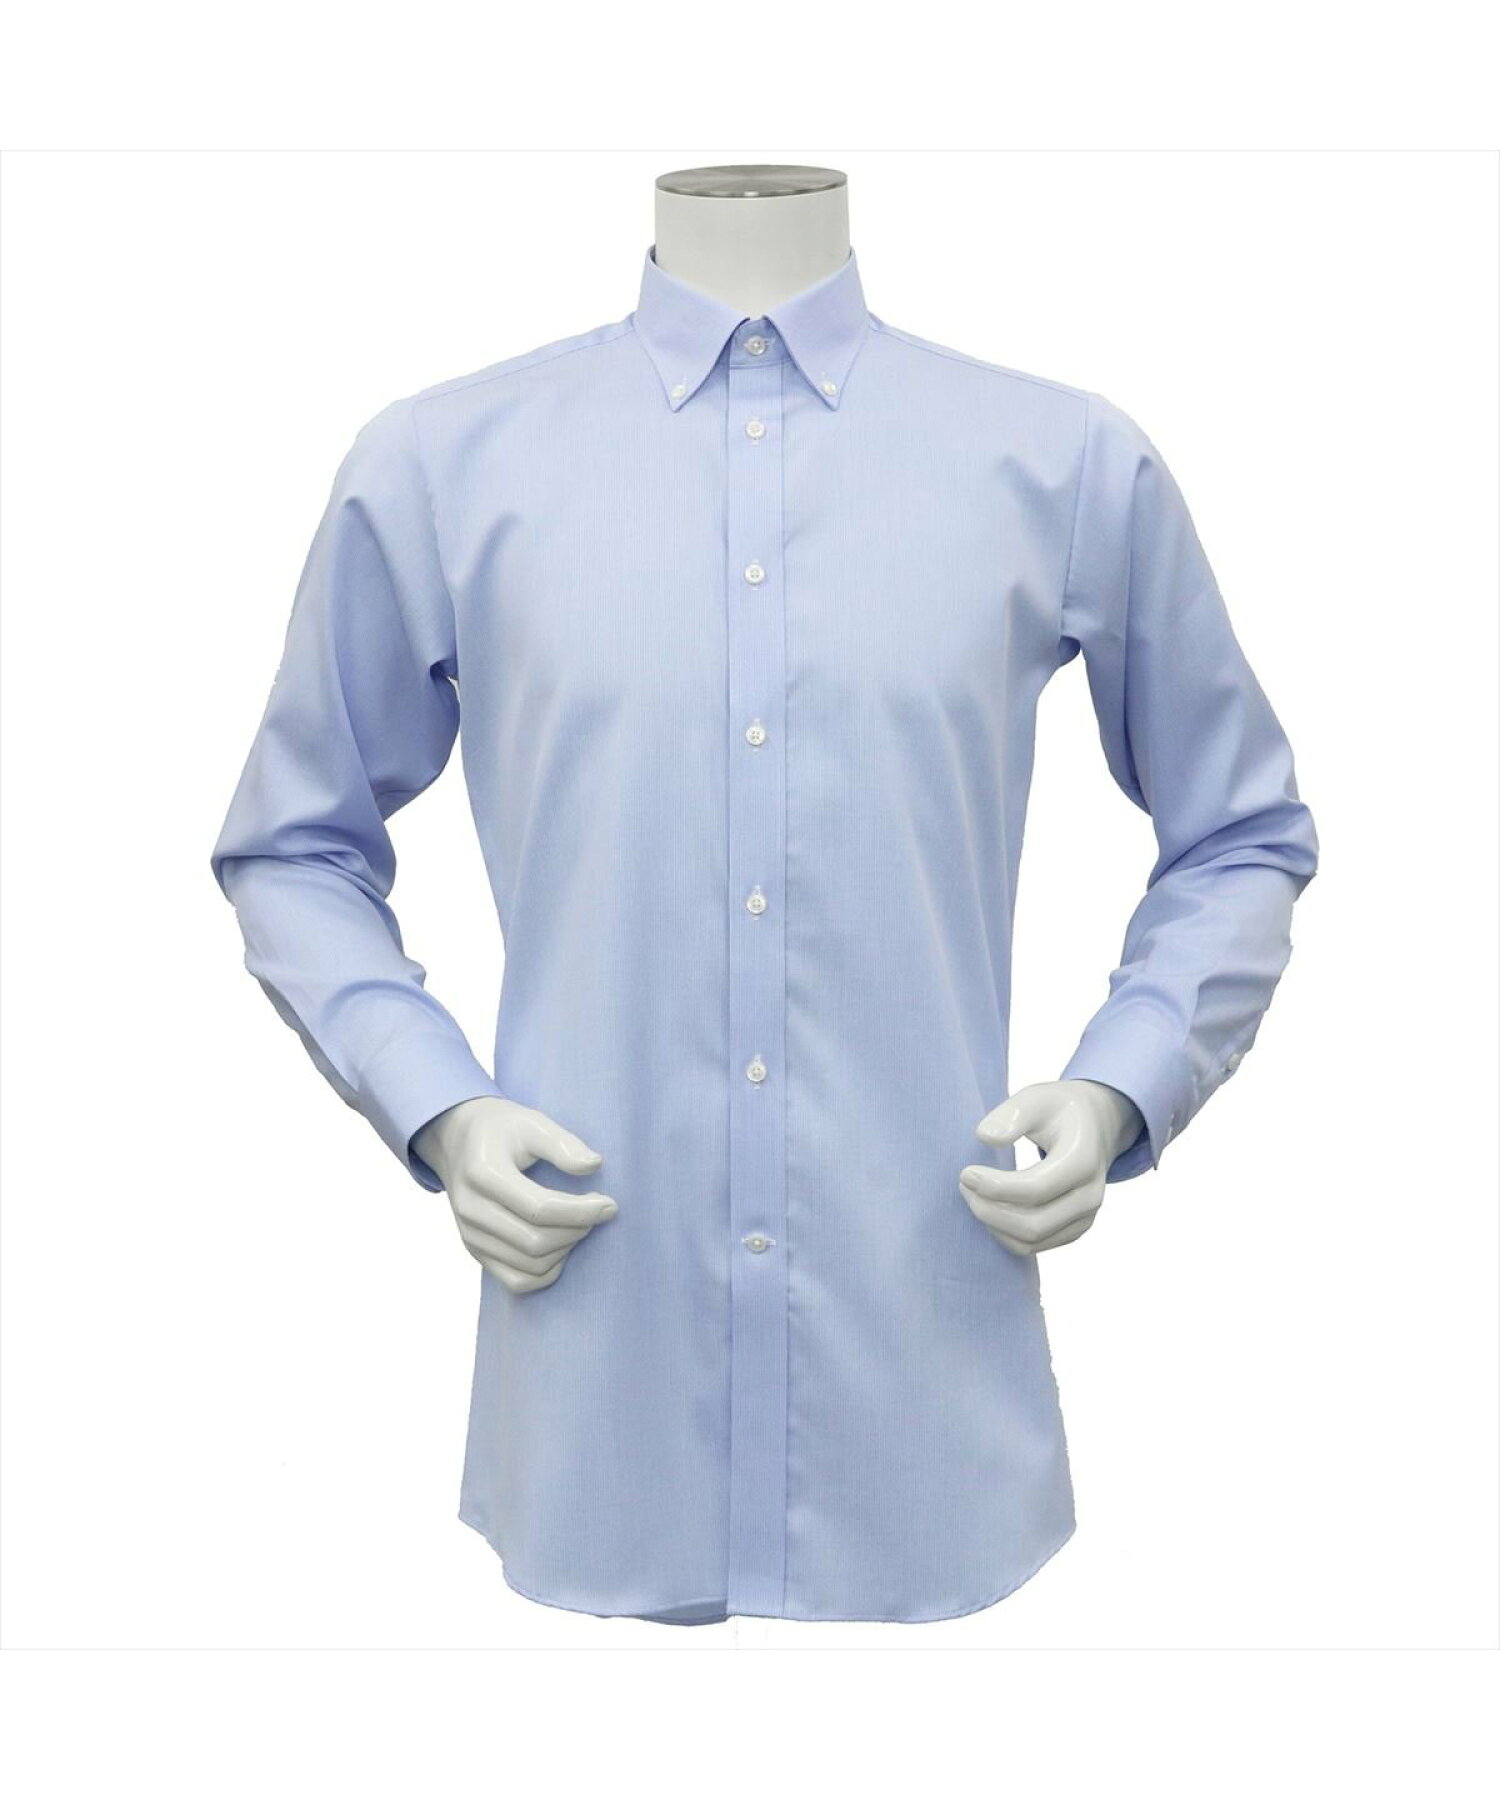 【国産しゃれシャツ】形態安定 ショートボタンダウン 綿100% 長袖ワイシャツ